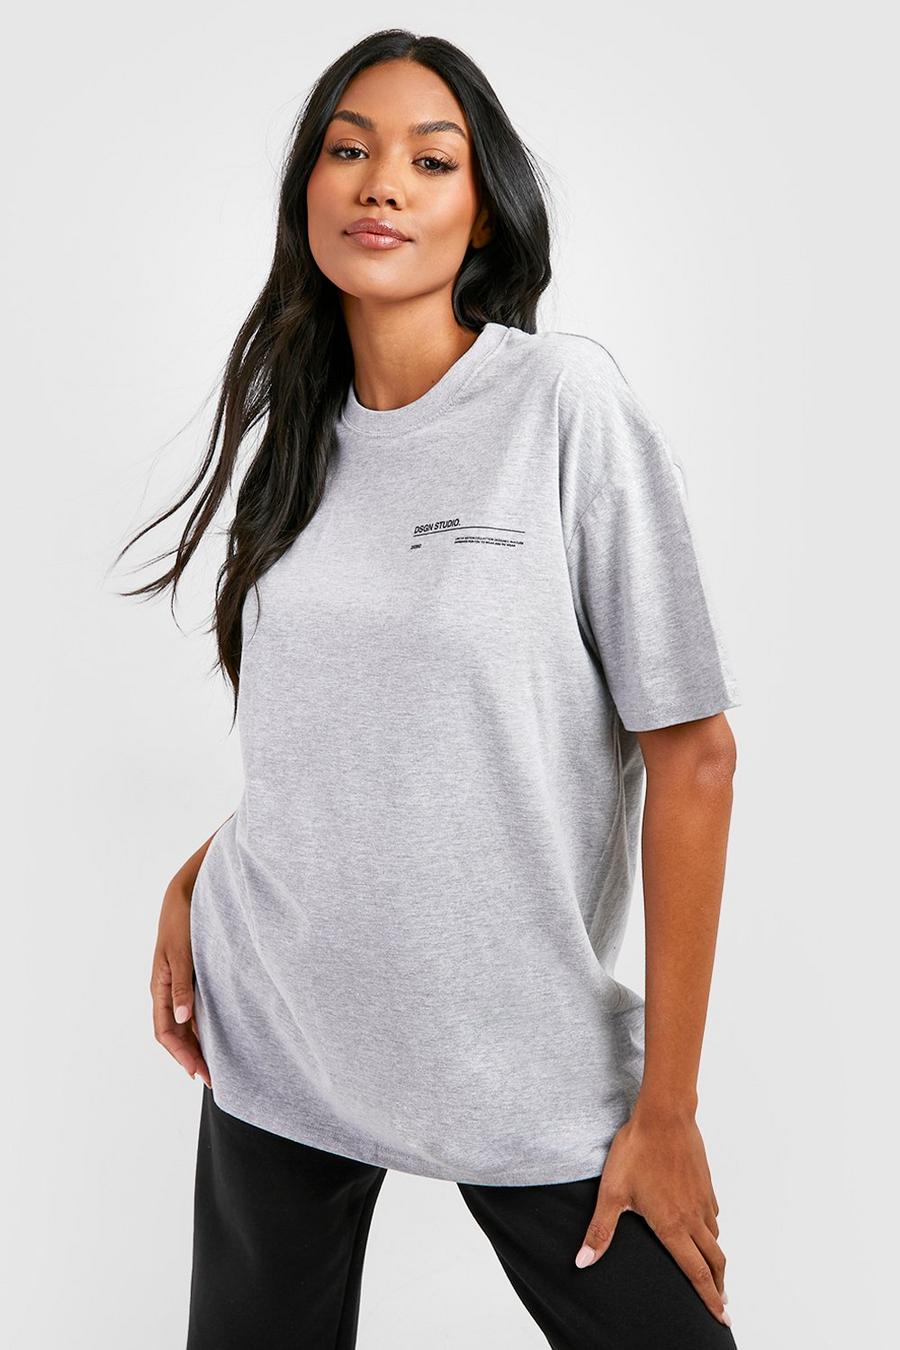 Camiseta Premamá oversize con estampado Dsgn Studio, Grey marl